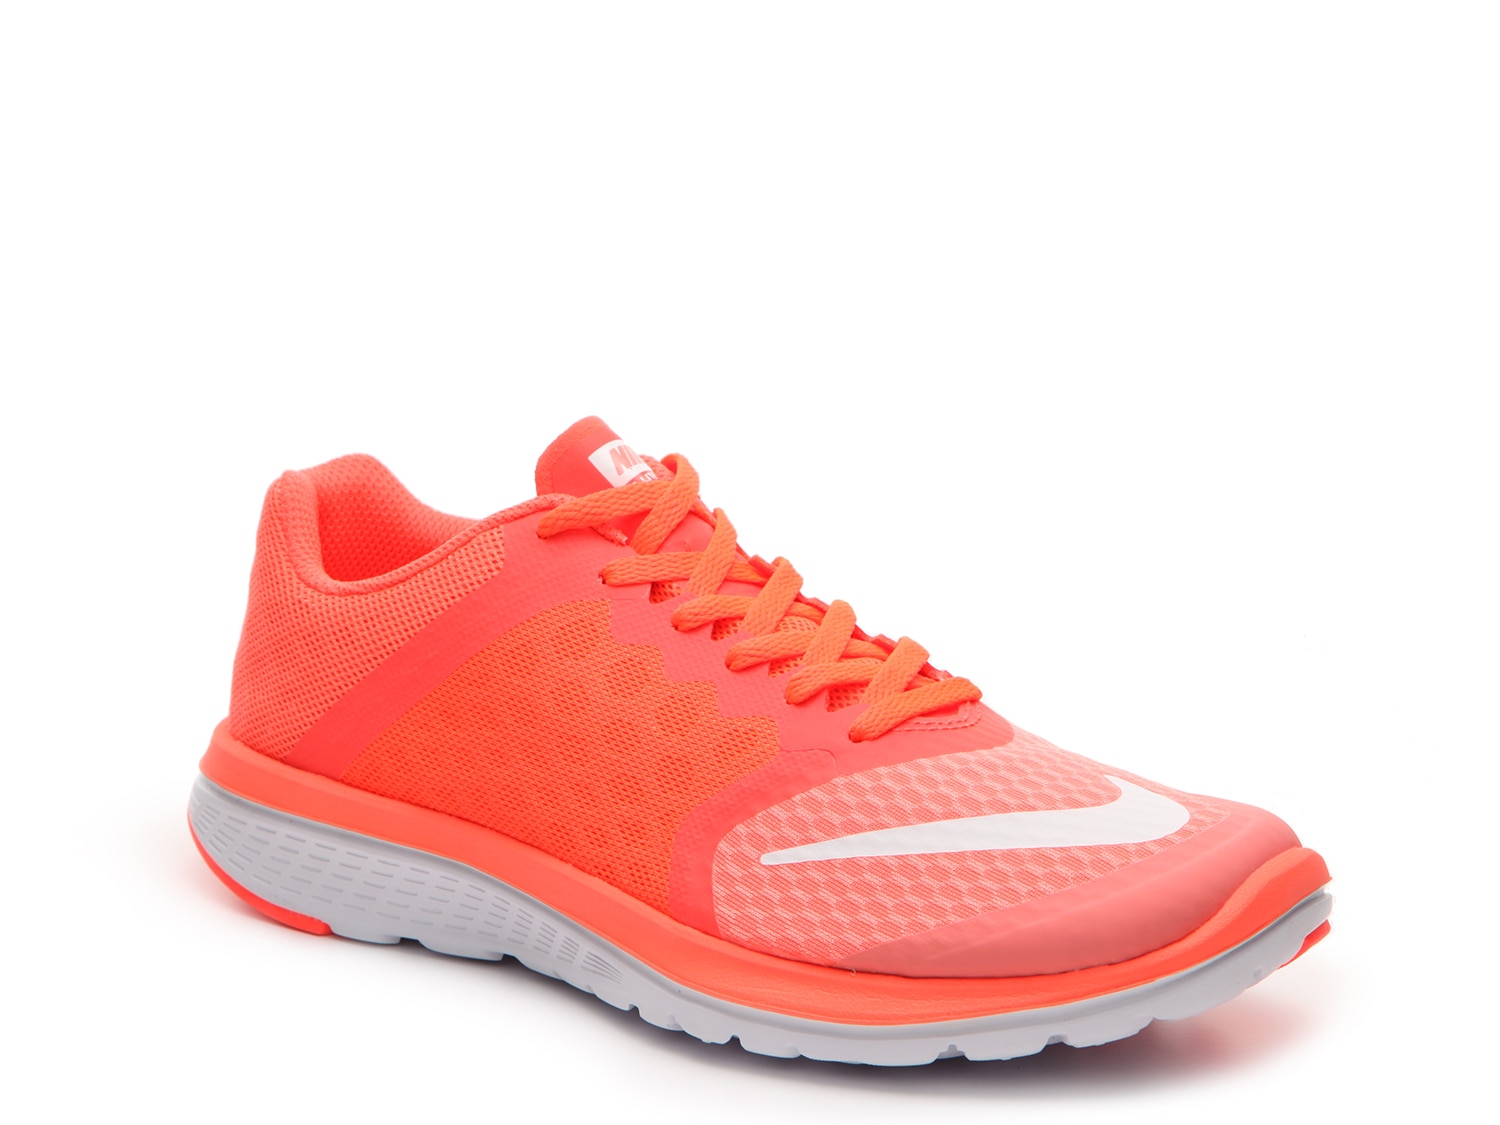 Nike FS Lite Run 3 Running Shoe - Women's - Free Shipping | DSW